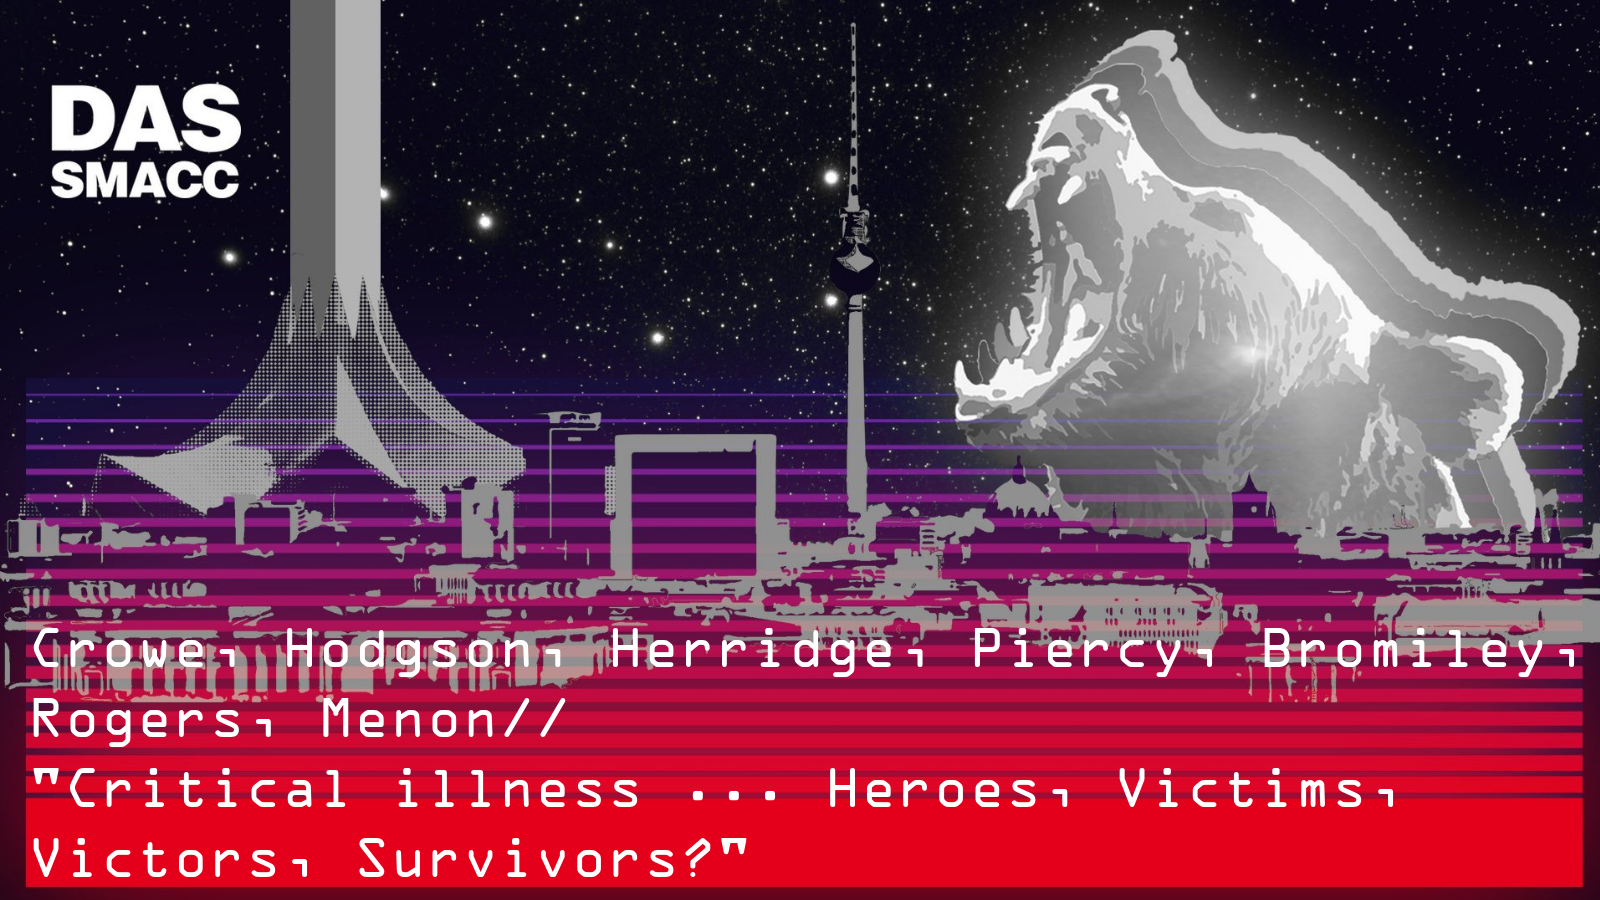 Critical illness ... Heroes, Victims, Victors, Survivors?